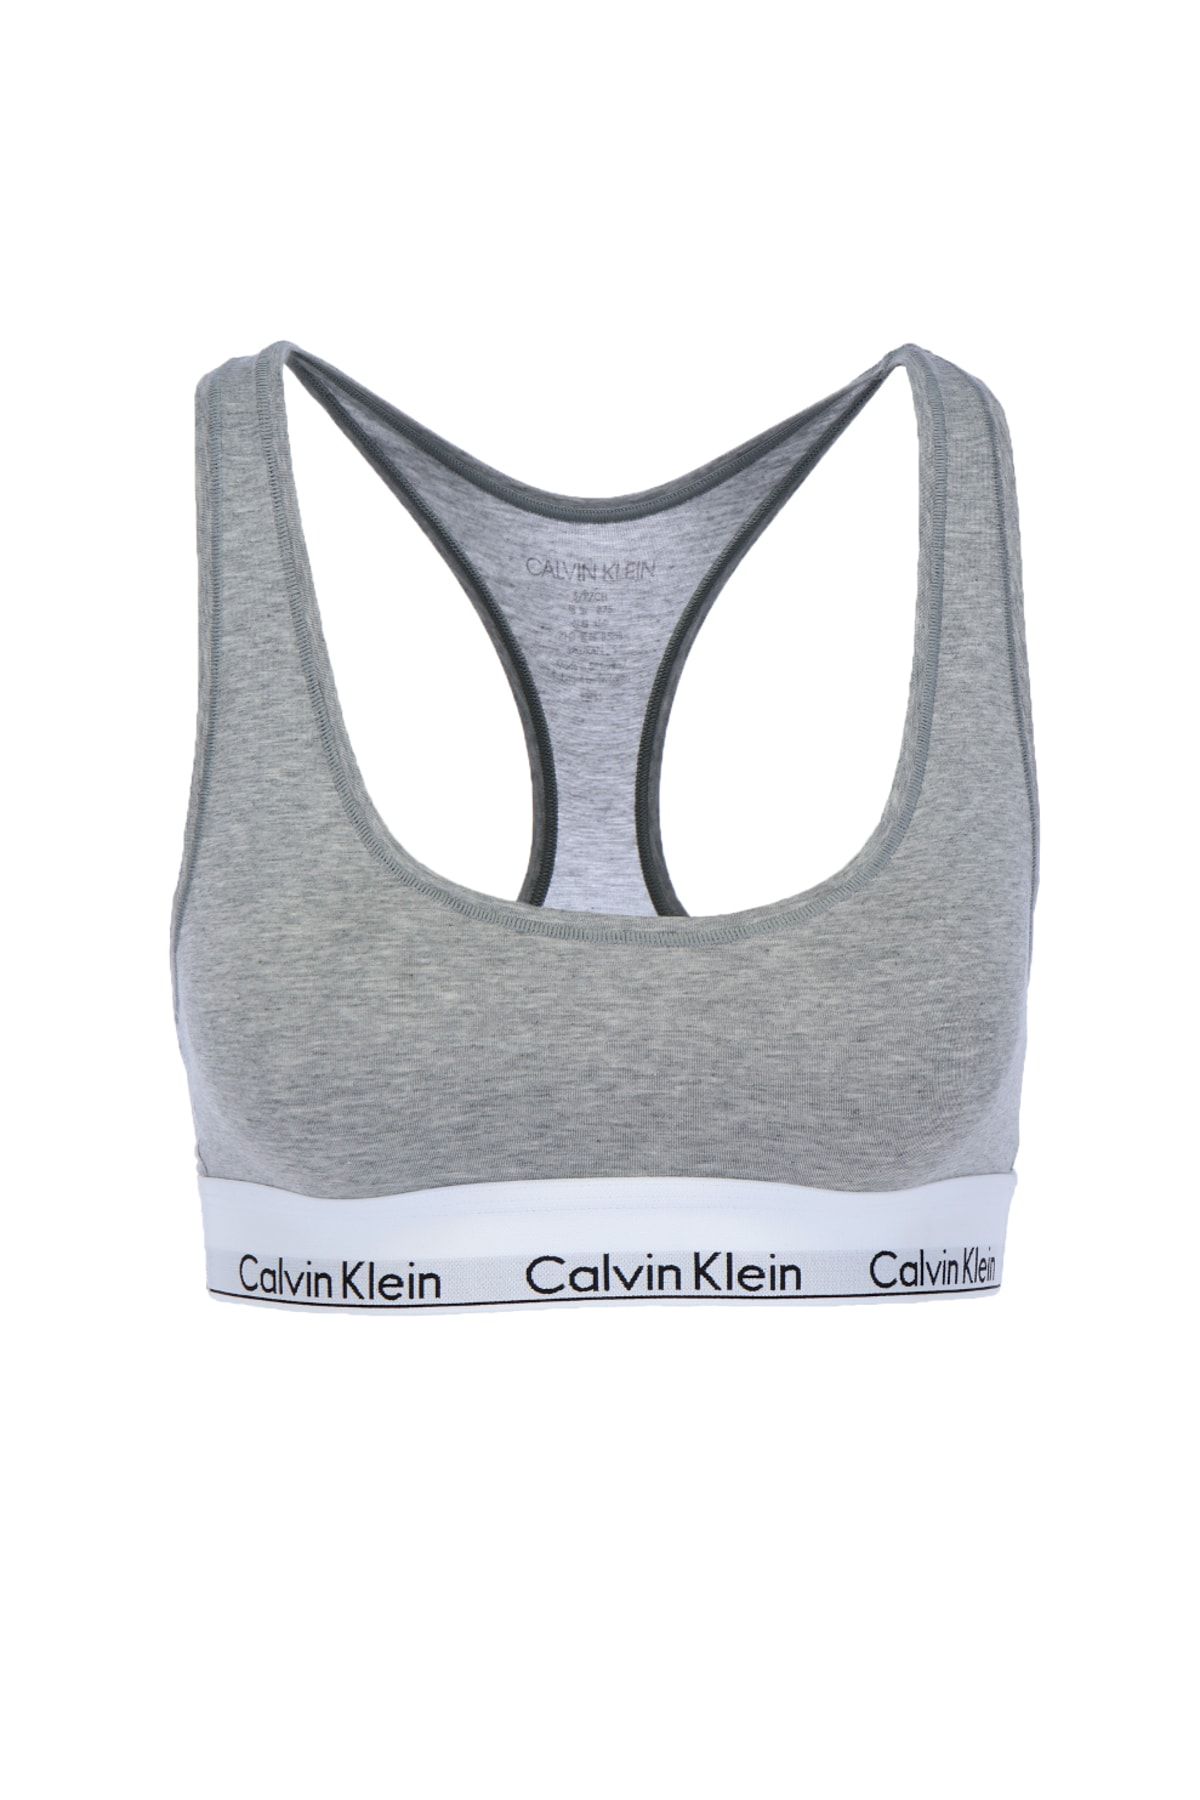 Calvin Klein Sports Bra - Gray - With Slogan - Trendyol